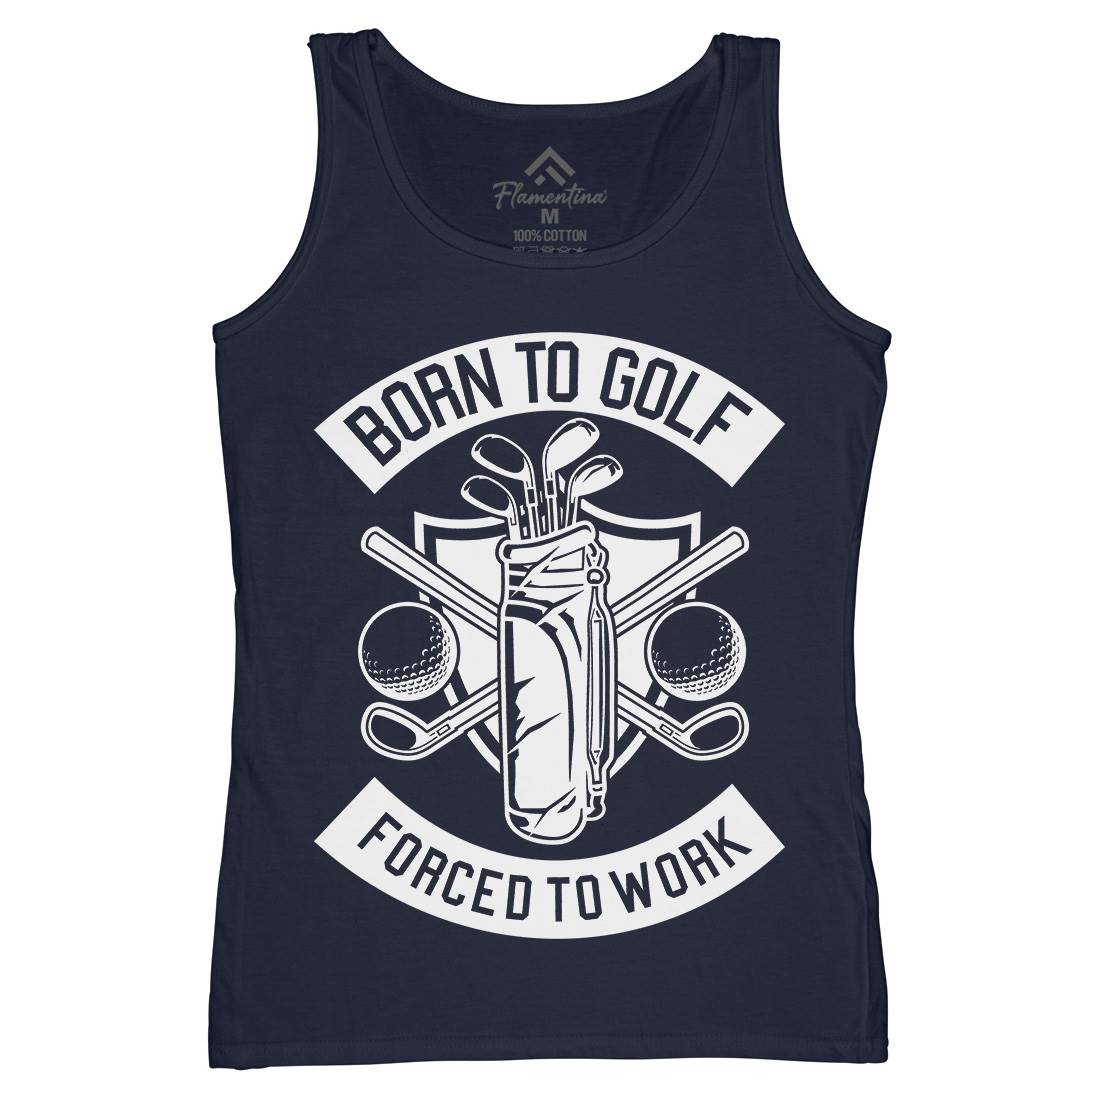 Born To Golf Womens Organic Tank Top Vest Sport B504